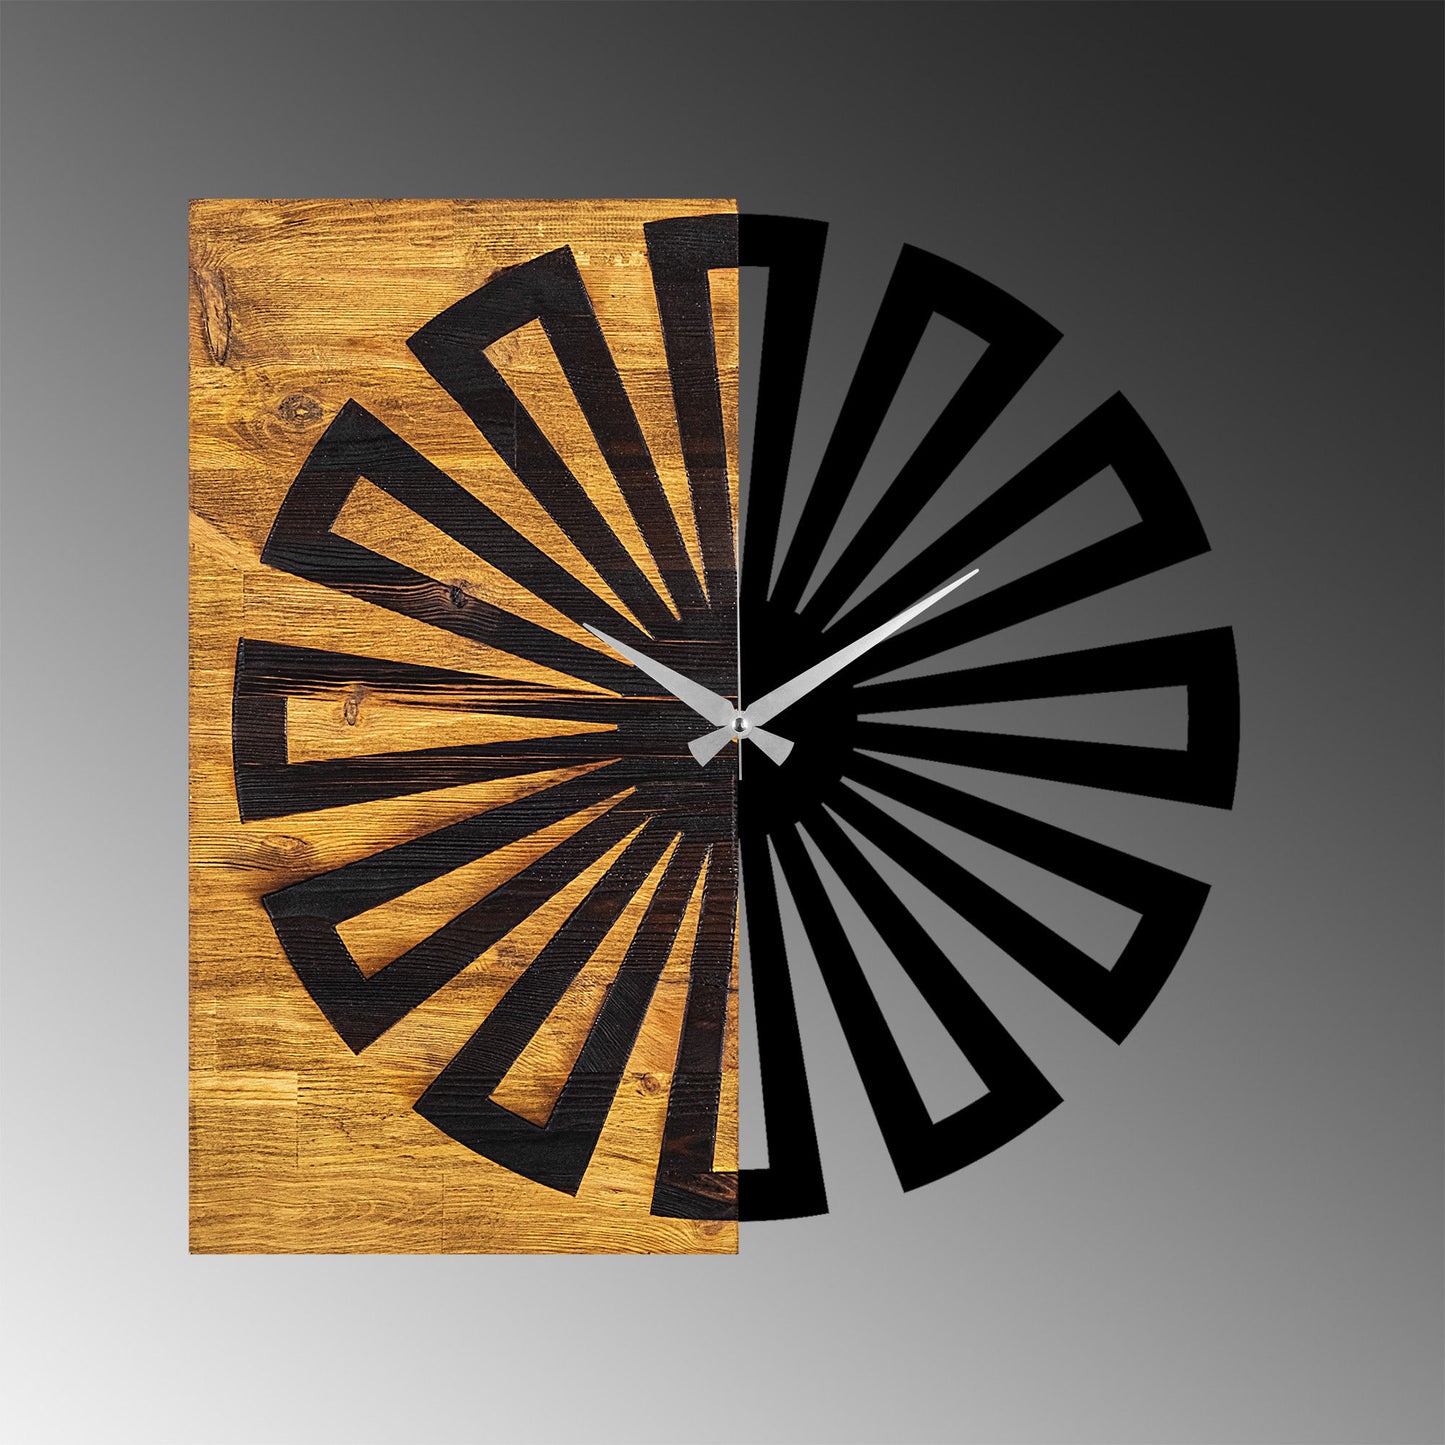 Wooden Clock 9 - Decorative Wooden Wall Clock